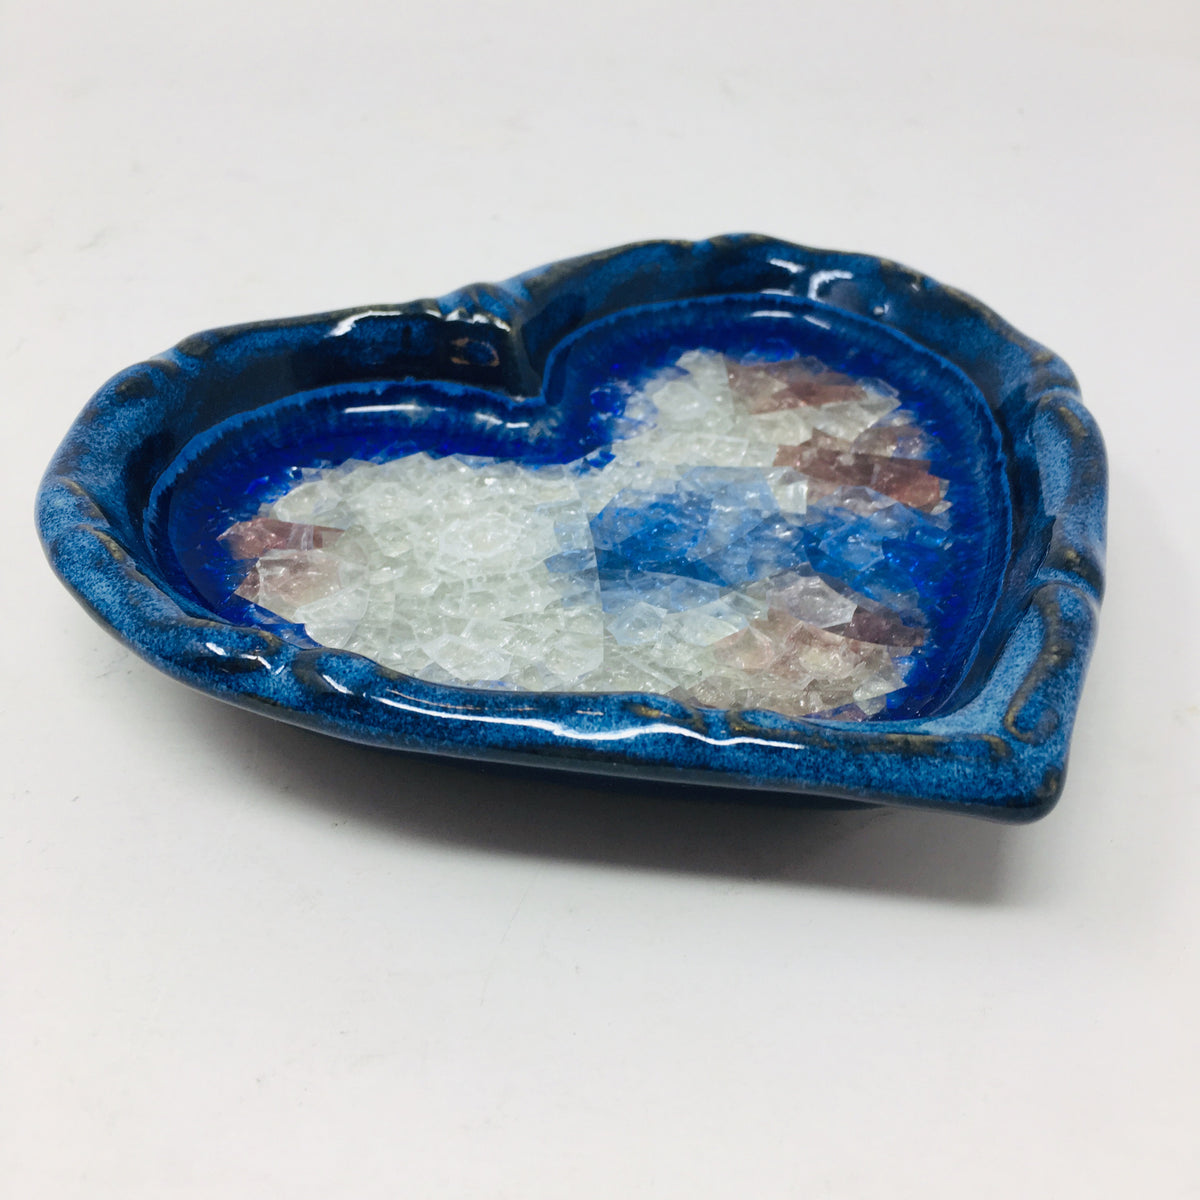 Artisan Pottery Heart Dish